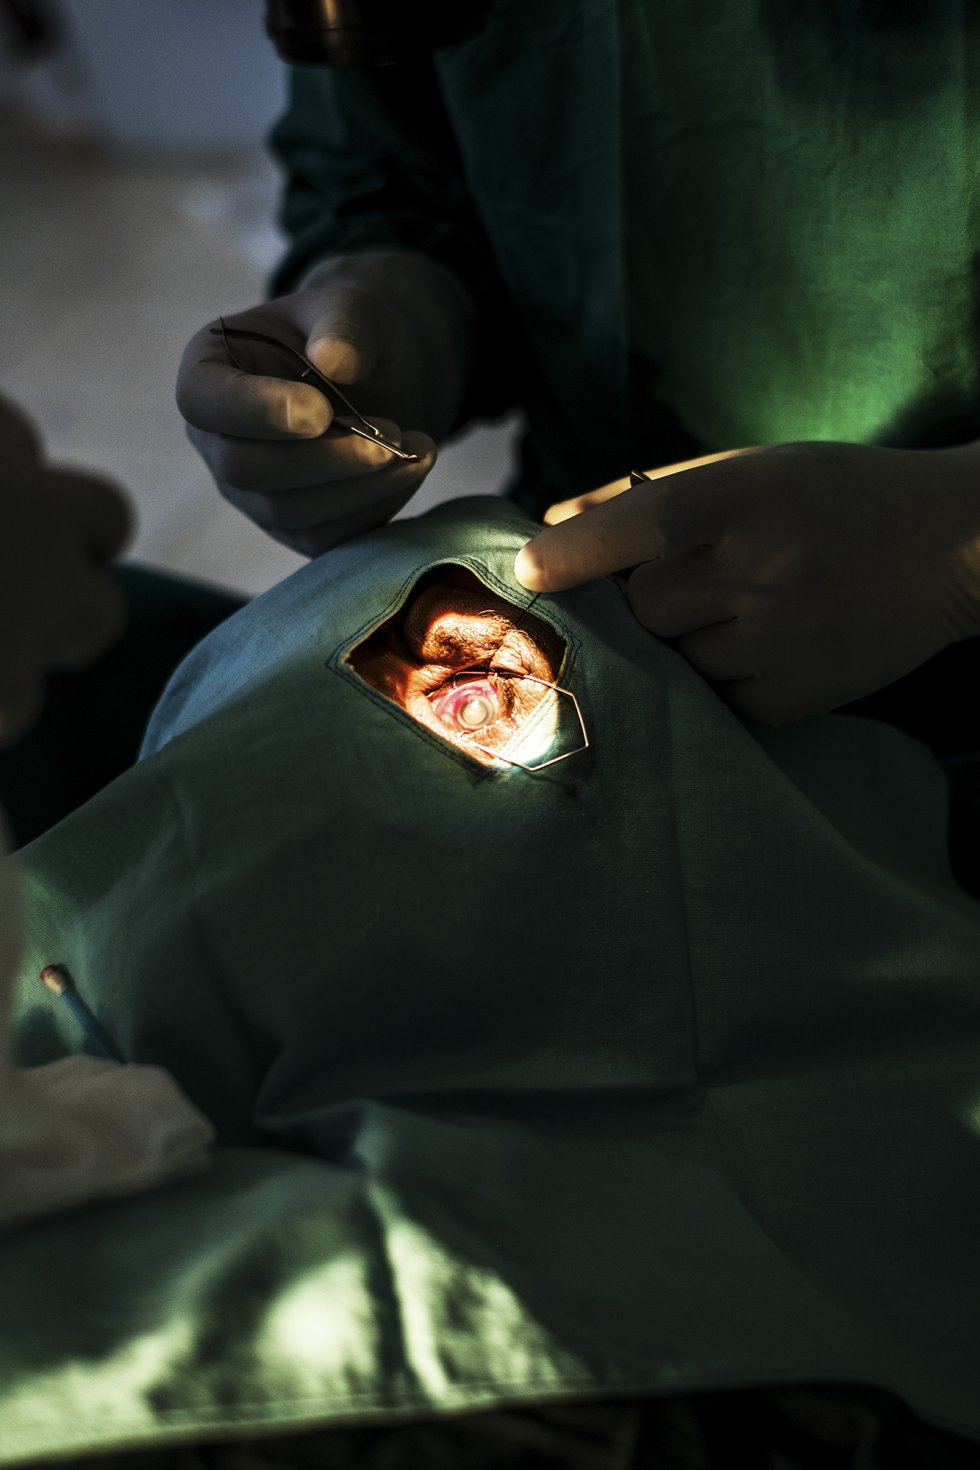 Las cataratas y el tracoma son las principales causas de ceguera y discapacidad visual en Etiopía. En la imagen, una operación de cataratas efectuada en el quirófano del Centro de Salud de Wasserà.